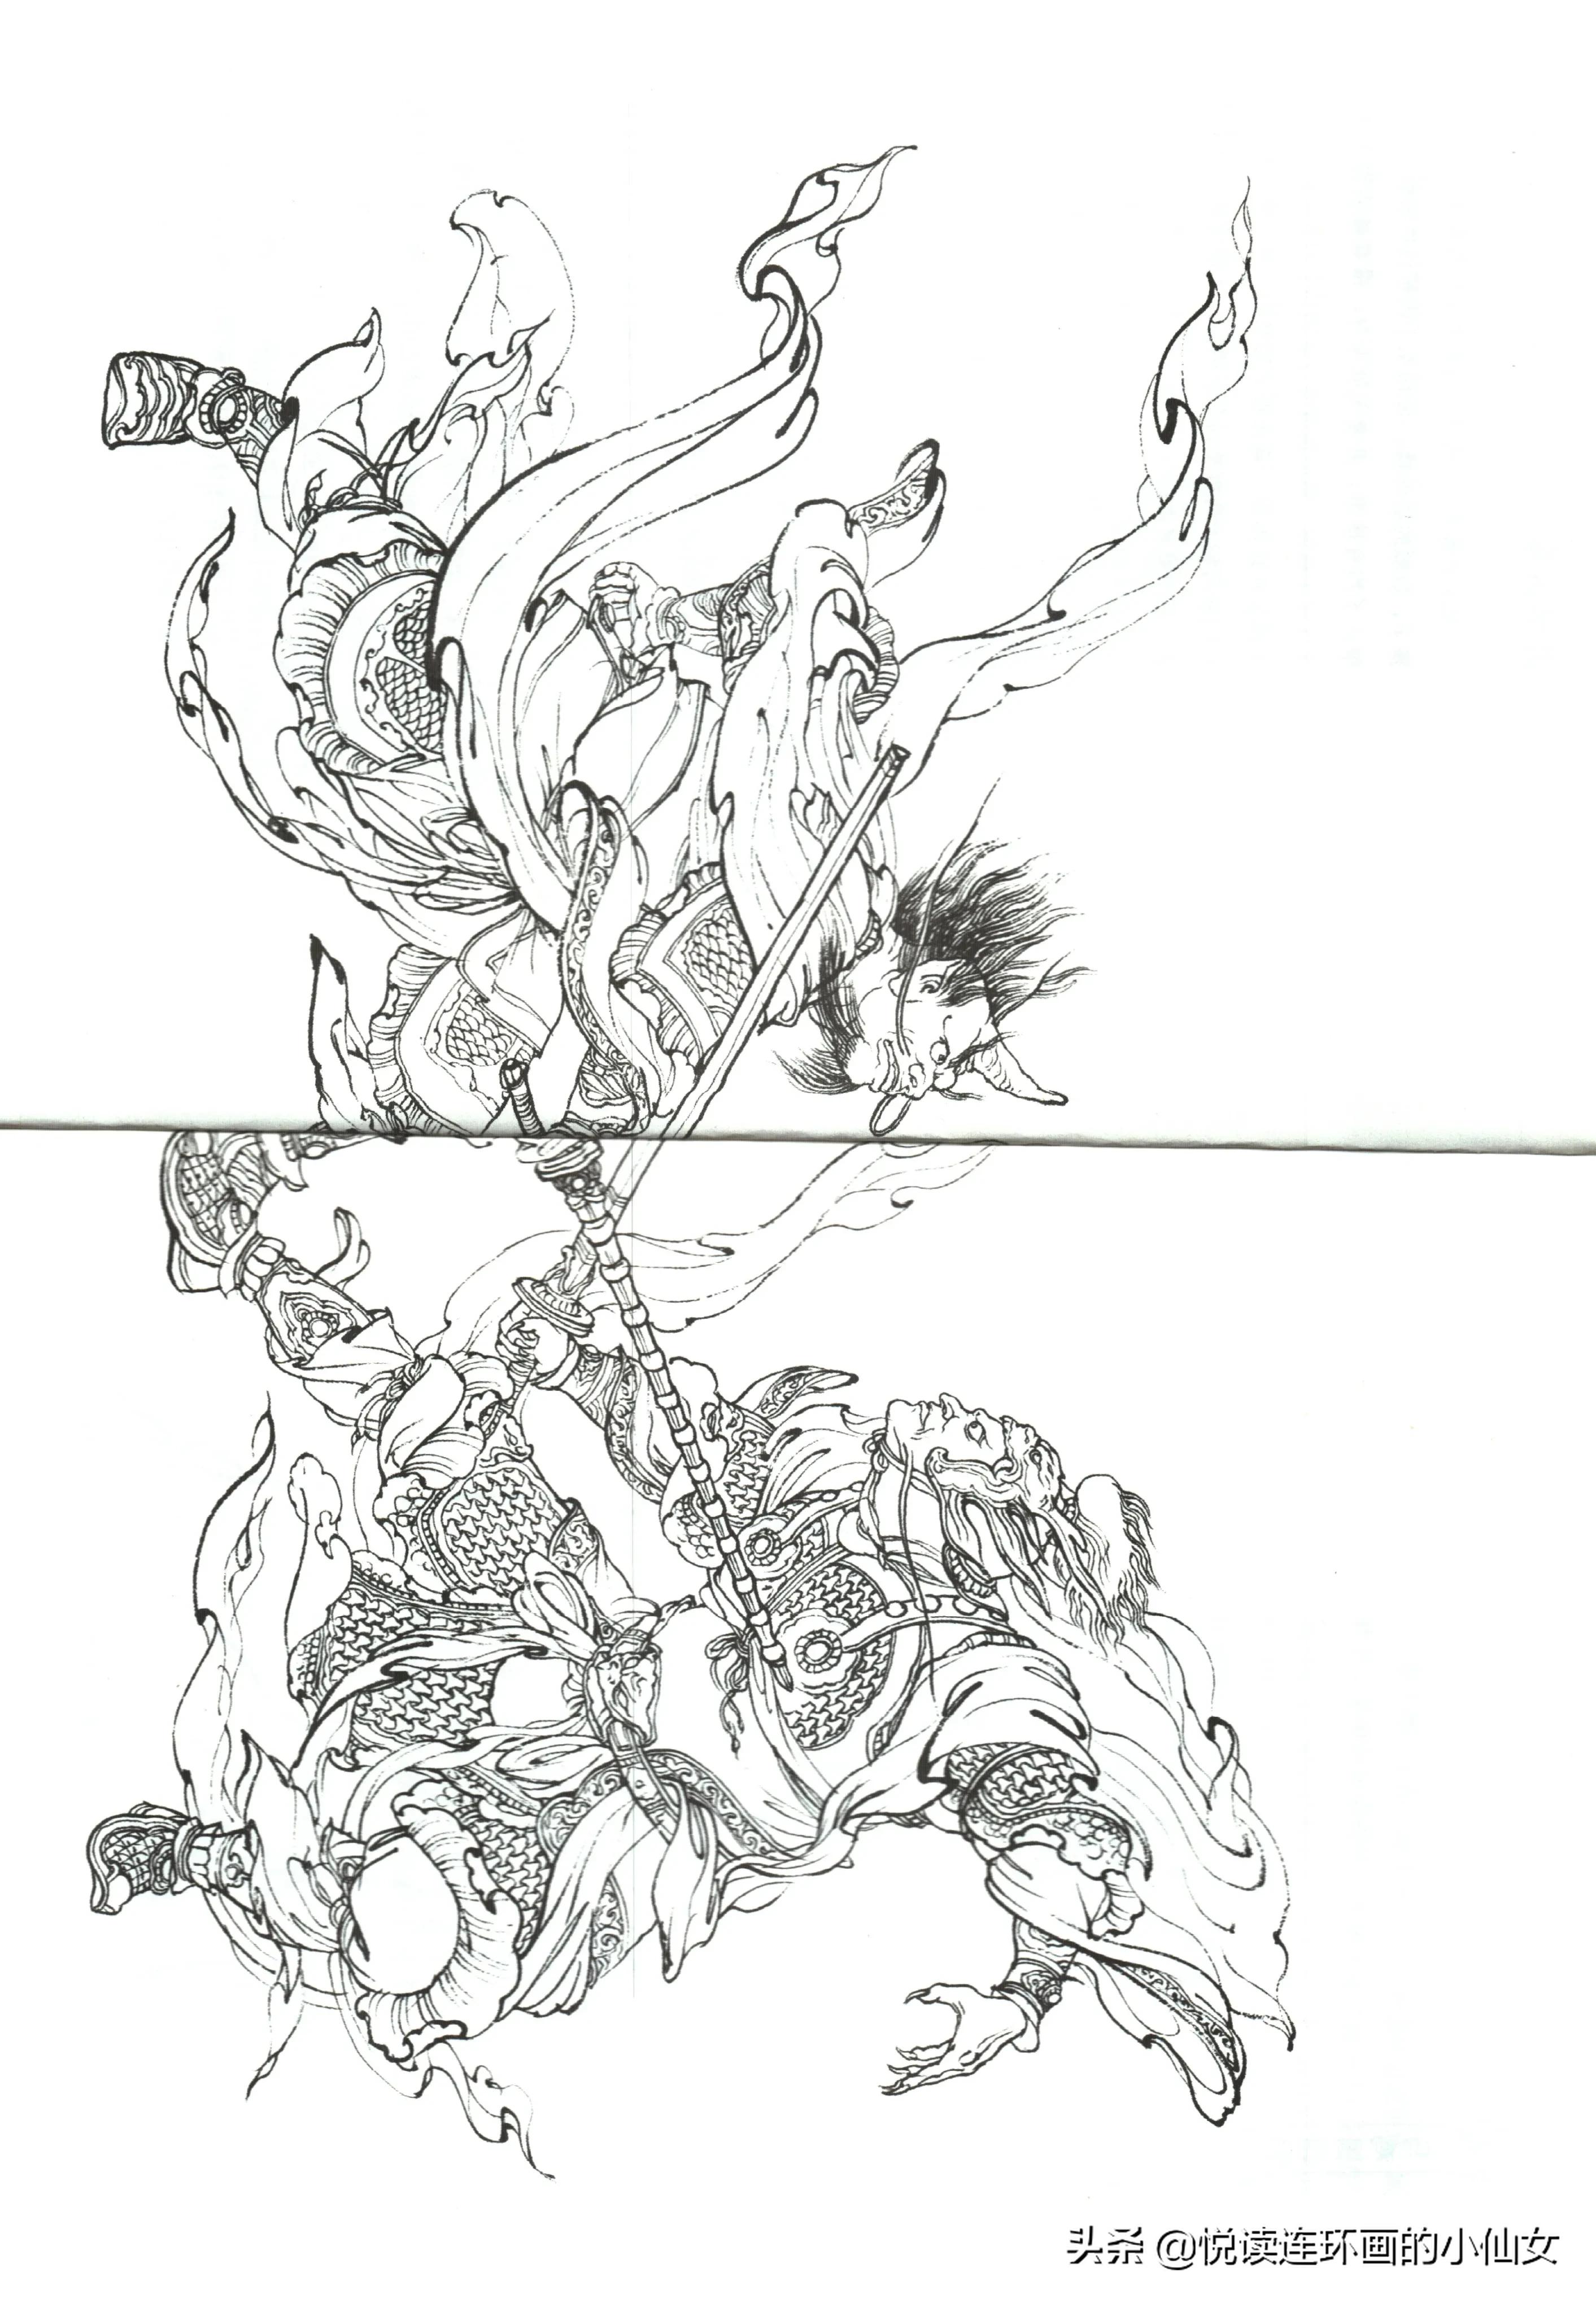 西游记神魔人物画谱，李云中绘插图(147)